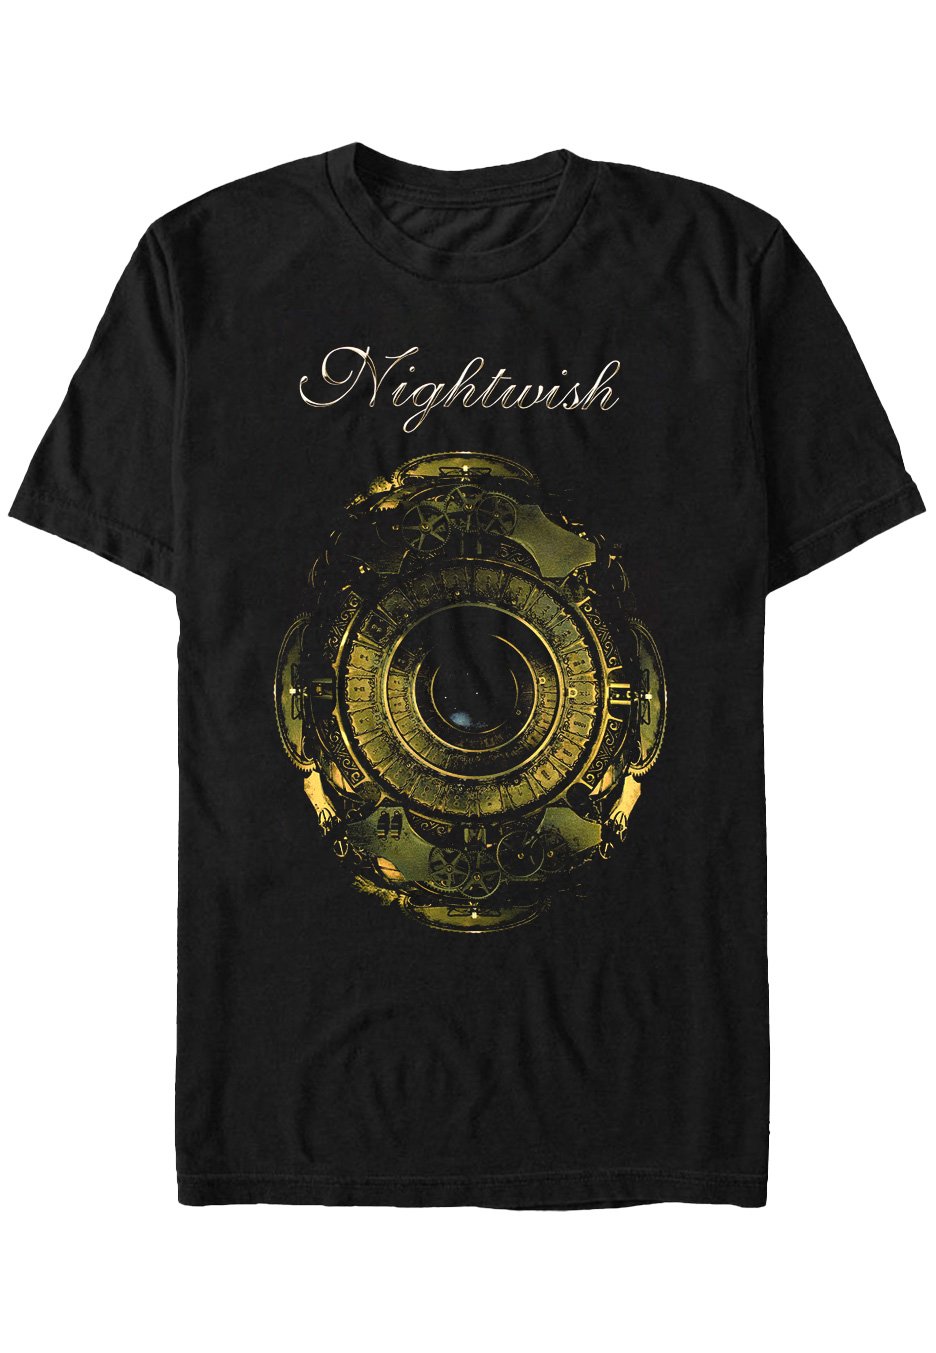 Nightwish - Decades - T-Shirt